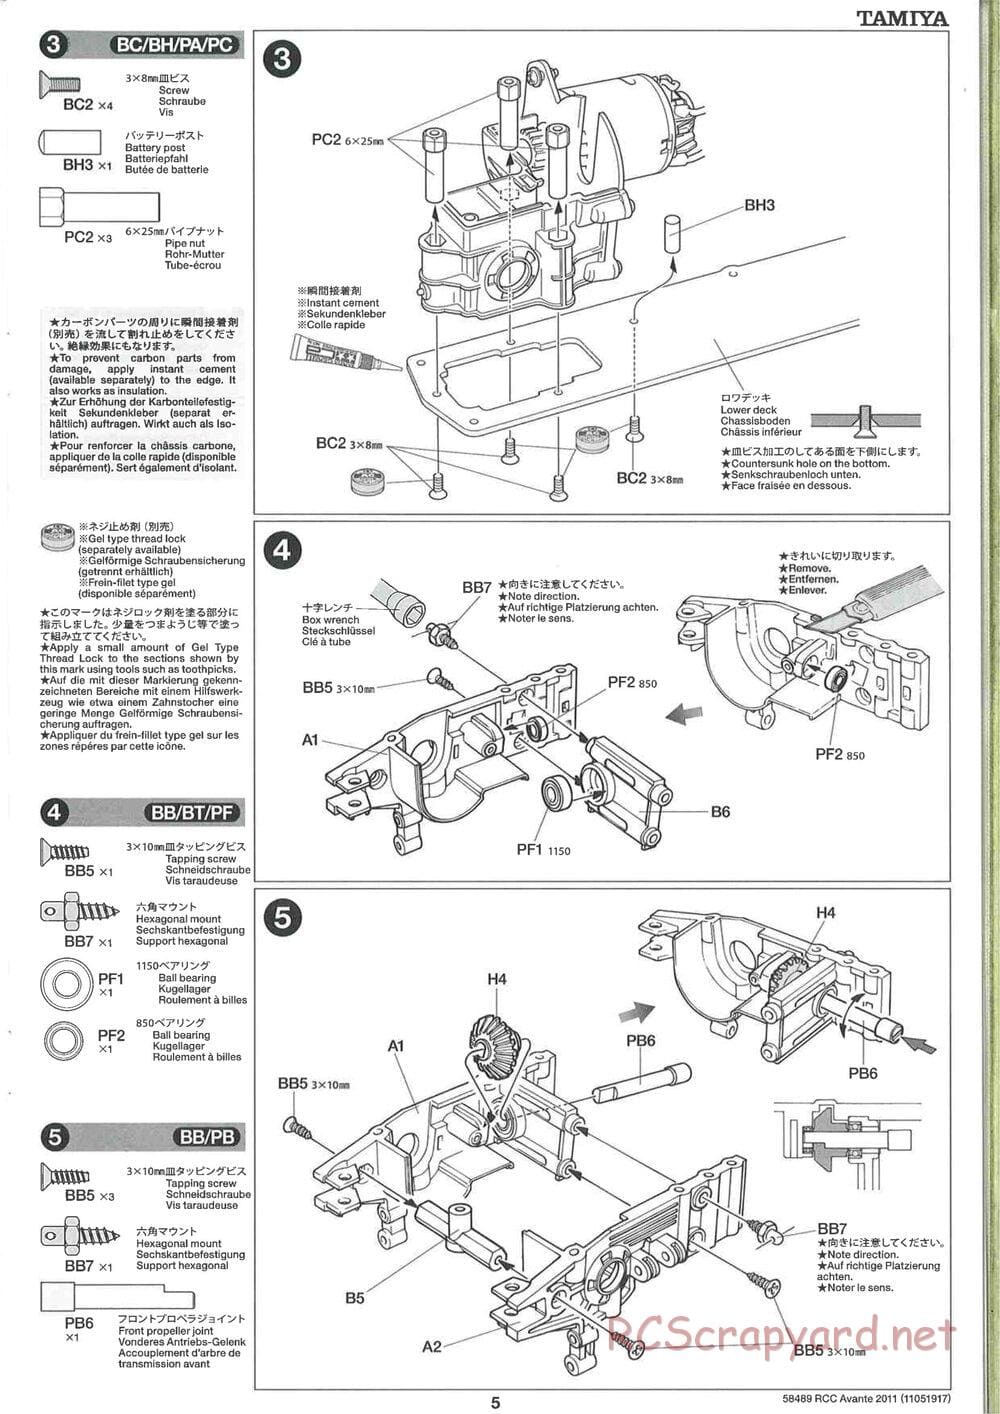 Tamiya - Avante 2011 - AV Chassis - Manual - Page 5